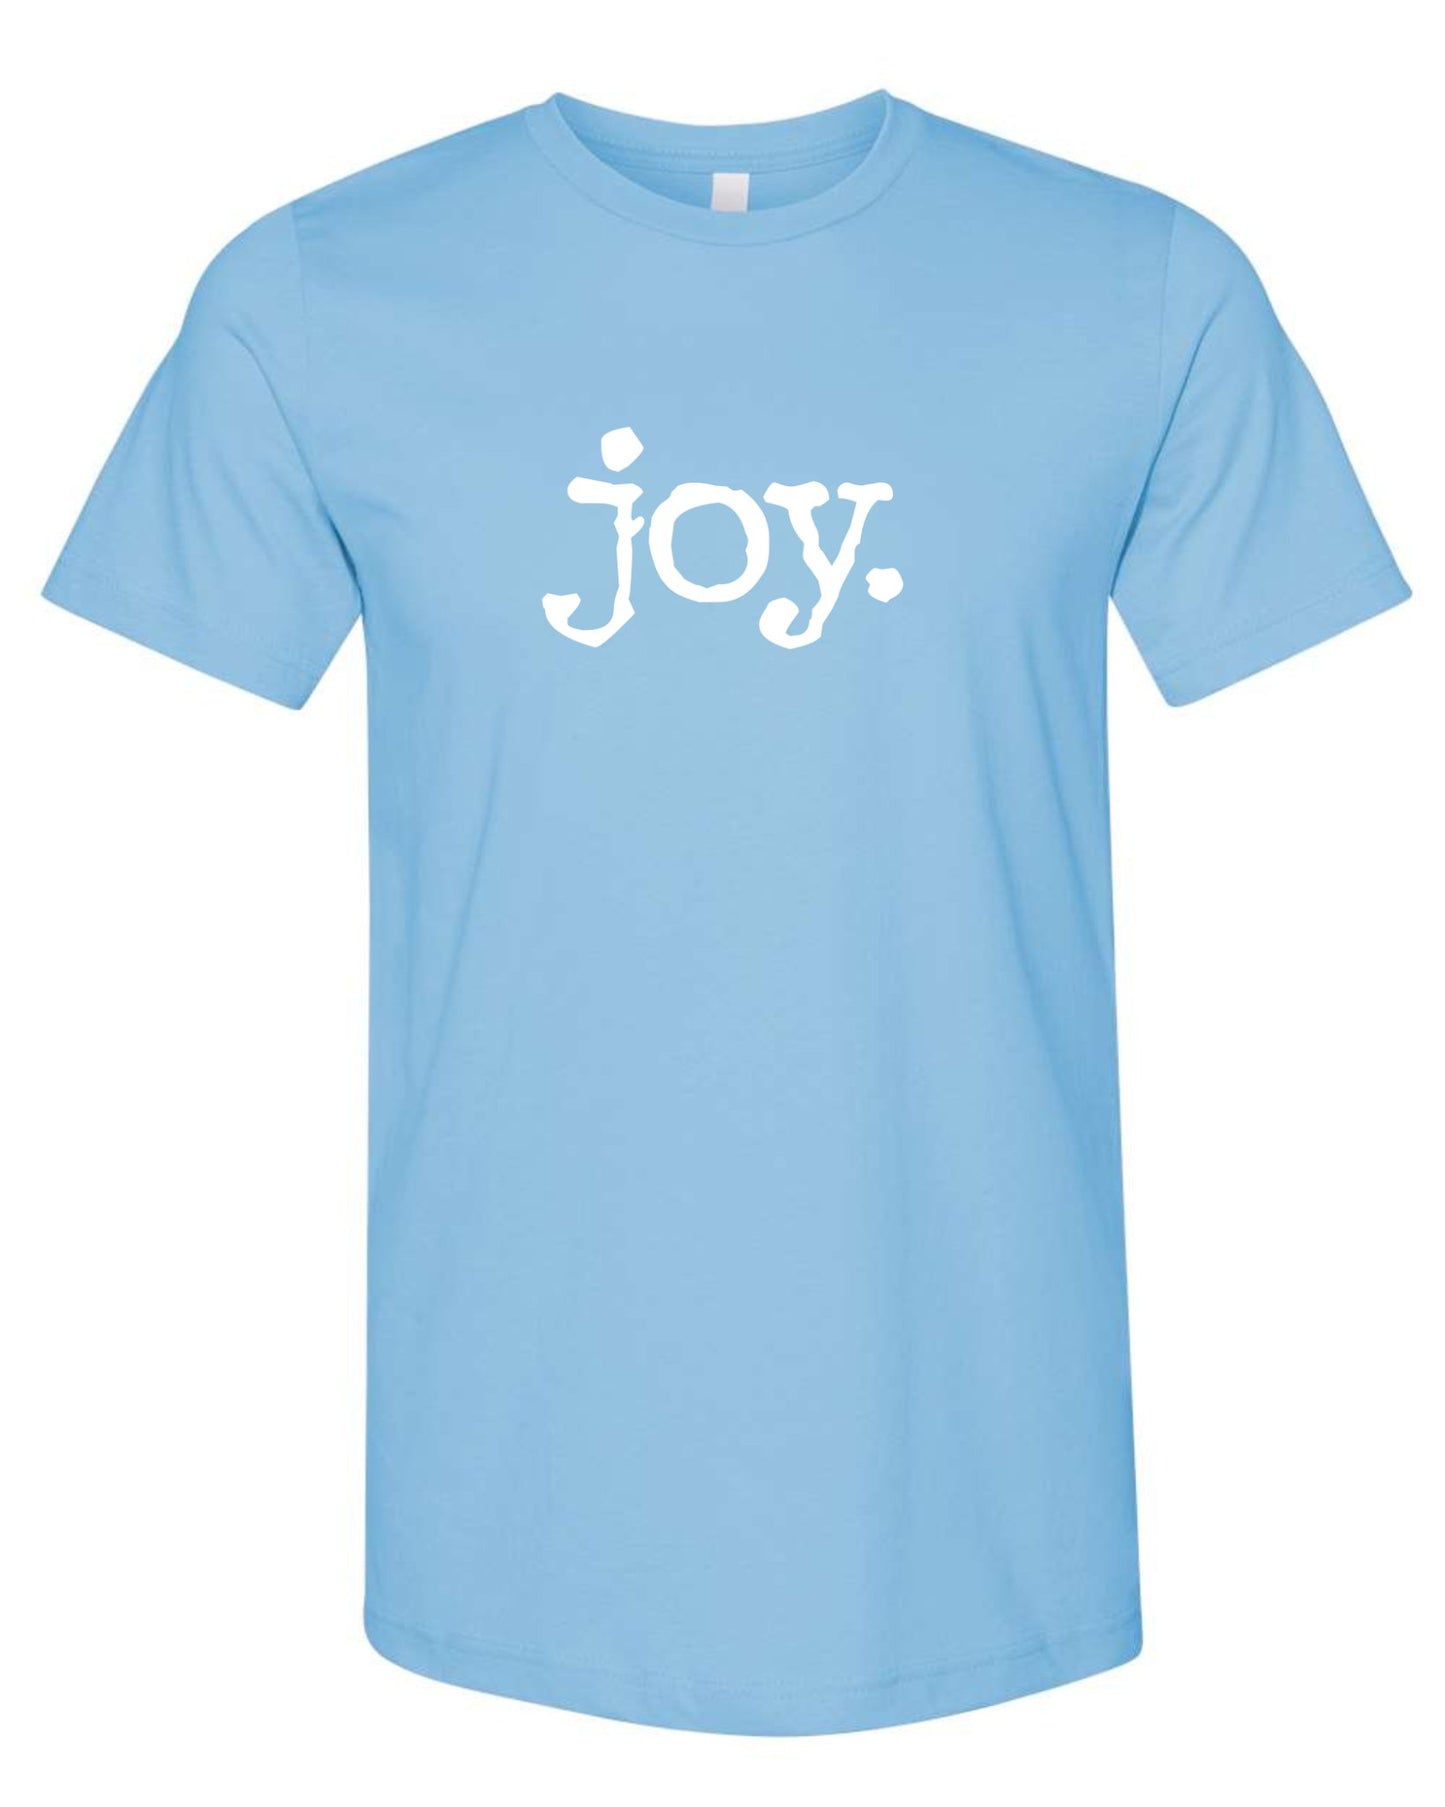 JOY (period) T shirt - SBS T Shop